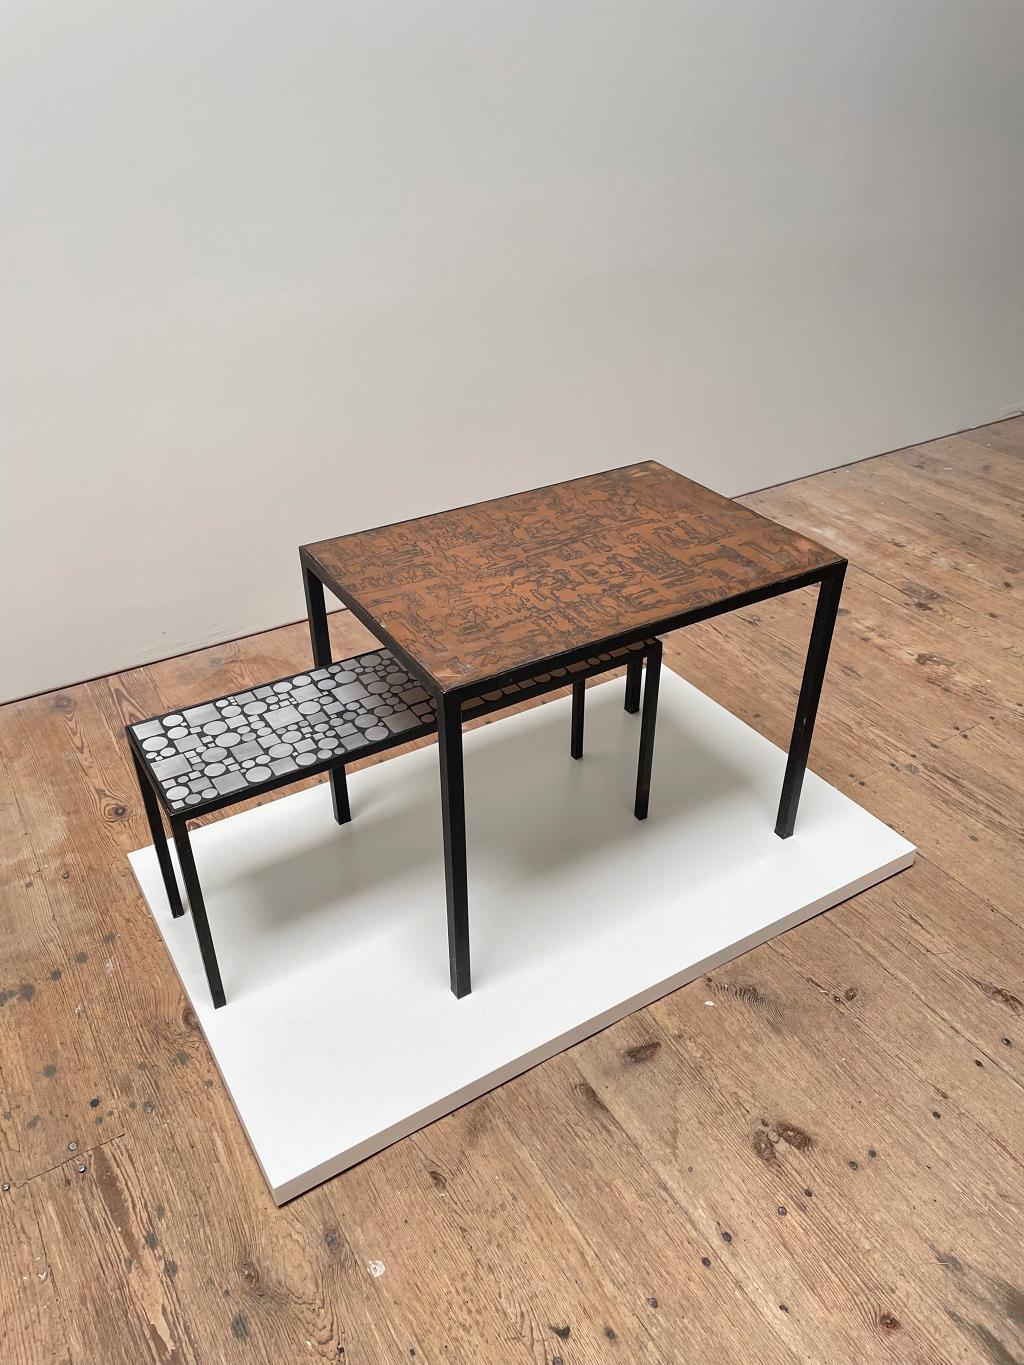 Magnifiques et rares tables basses ou d'appoint Herbert Hirch, fabriquées par ROSENTHAL dans les années 1970. Les cadres sont en acier laqué noir avec un plateau en acier inoxydable et en aluminium.

Herbert Hirch a étudié au Bauhaus de 1930 à 33,